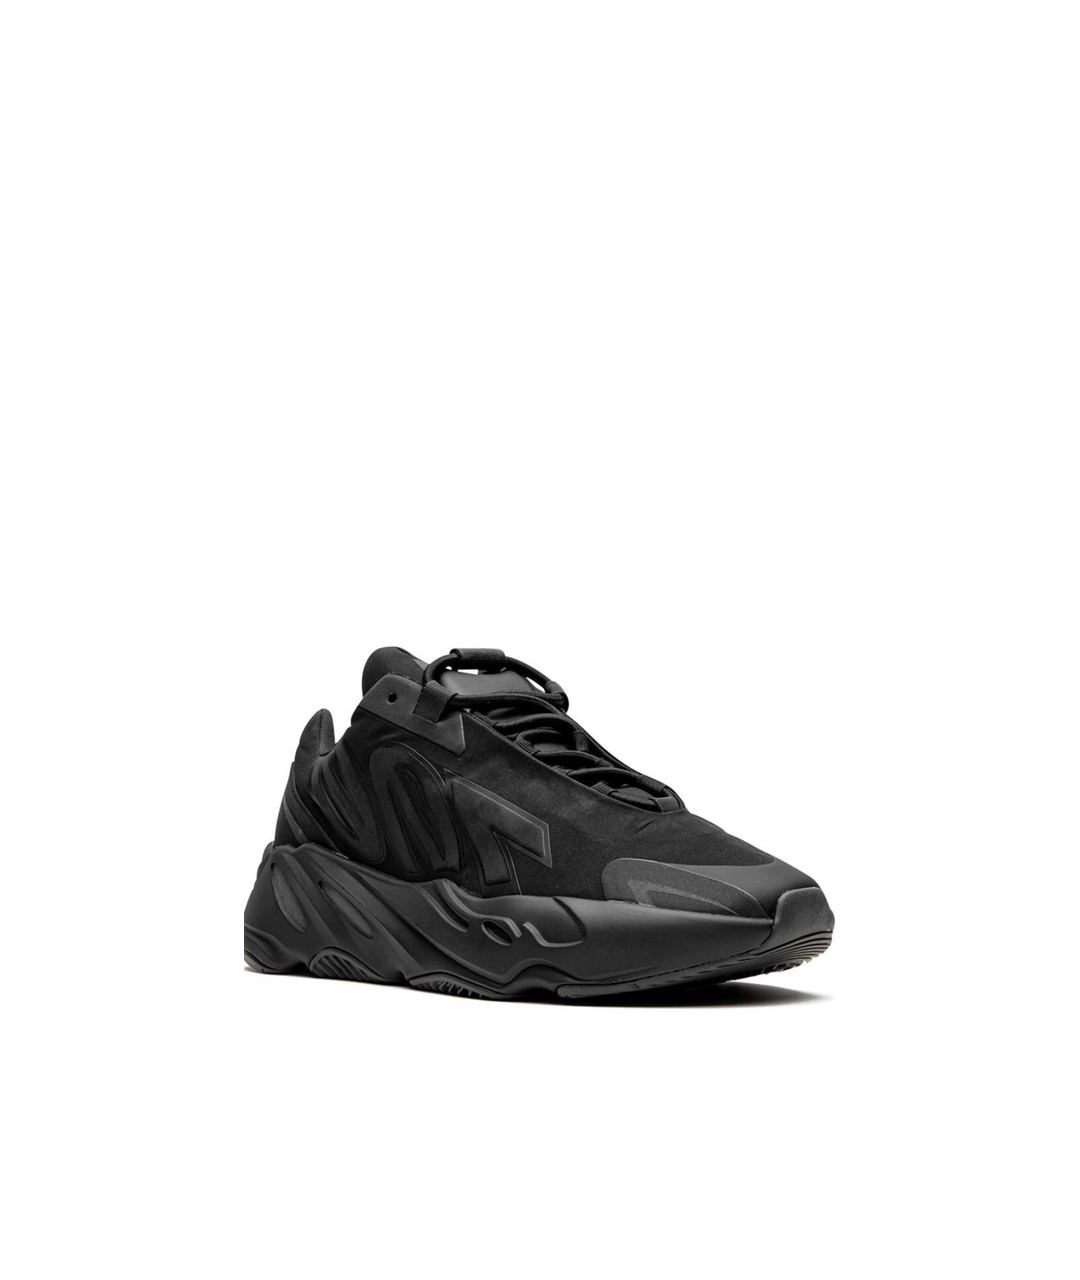 ADIDAS YEEZY Черные высокие кроссовки / кеды, фото 1